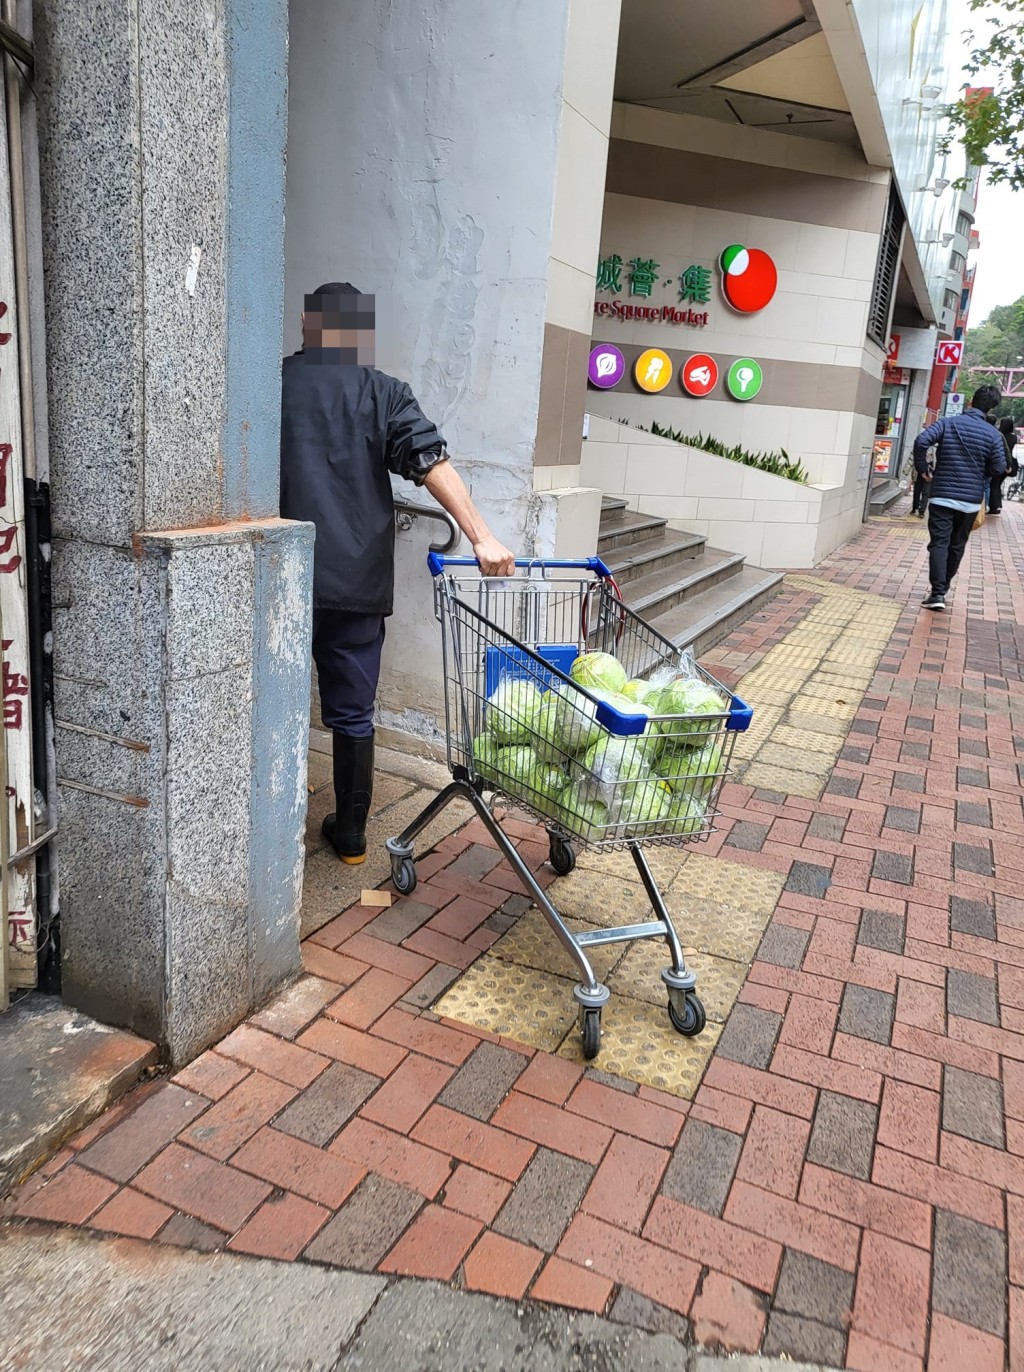 有网民指有菜贩涉嫌哄抢倒卖蔬菜。图片转载自「丽城花园之友」